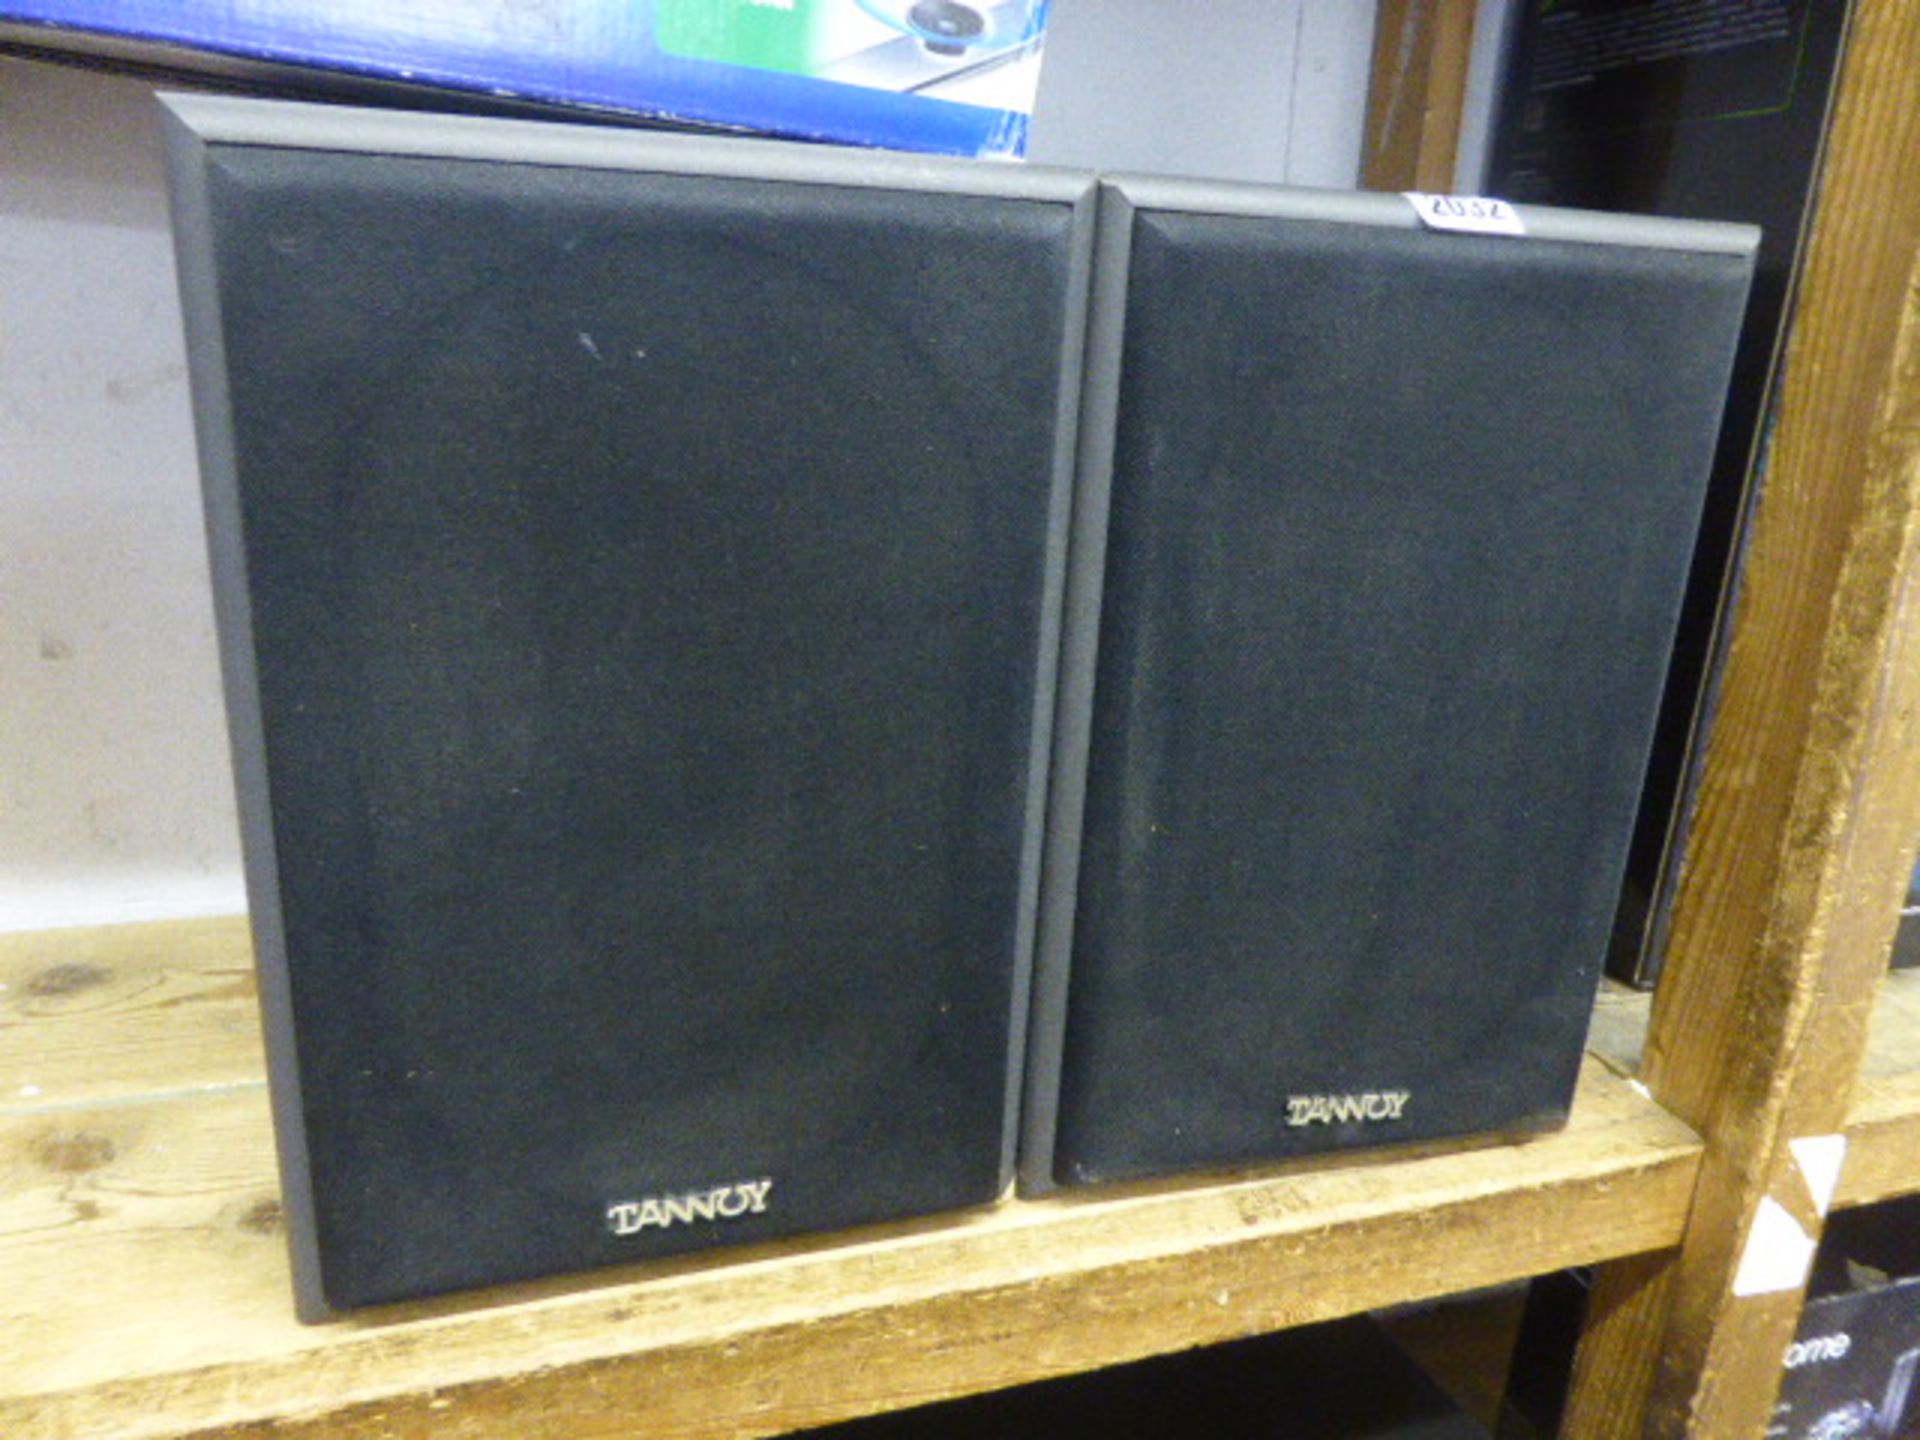 2 x Tannoy PBM6.52 model speakers